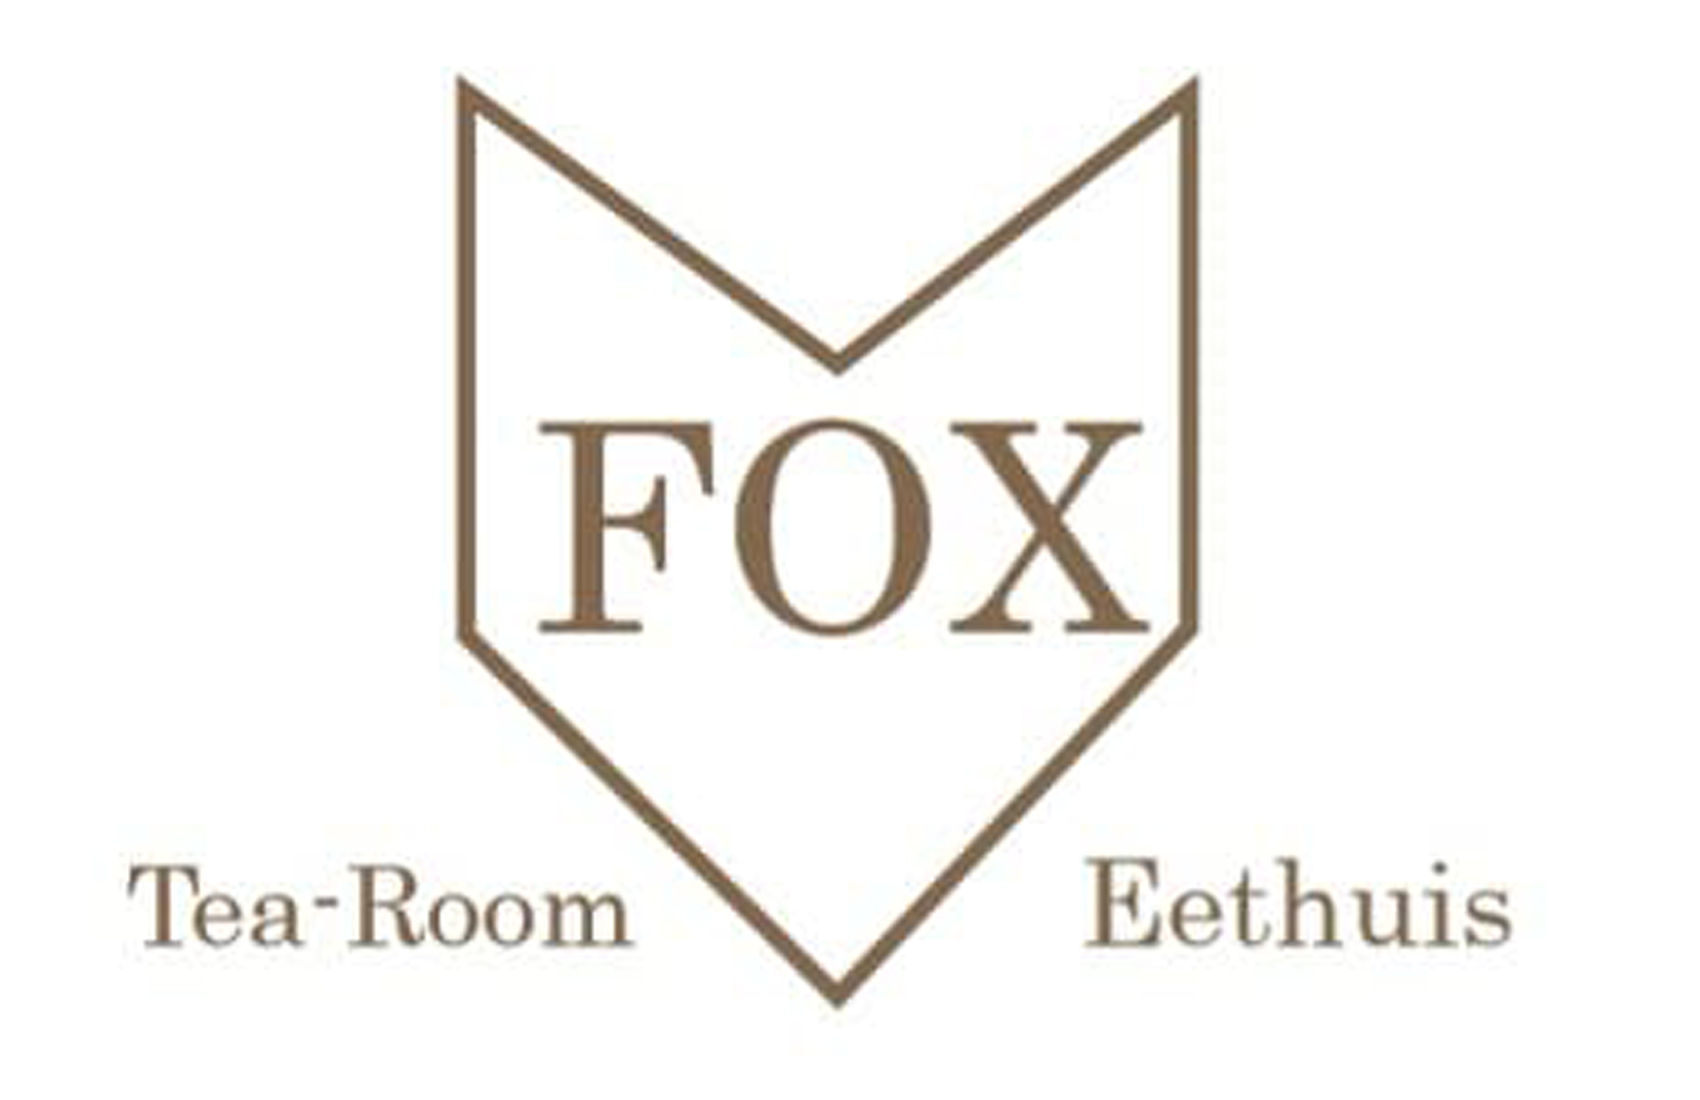 Fox tearoom & eethuis